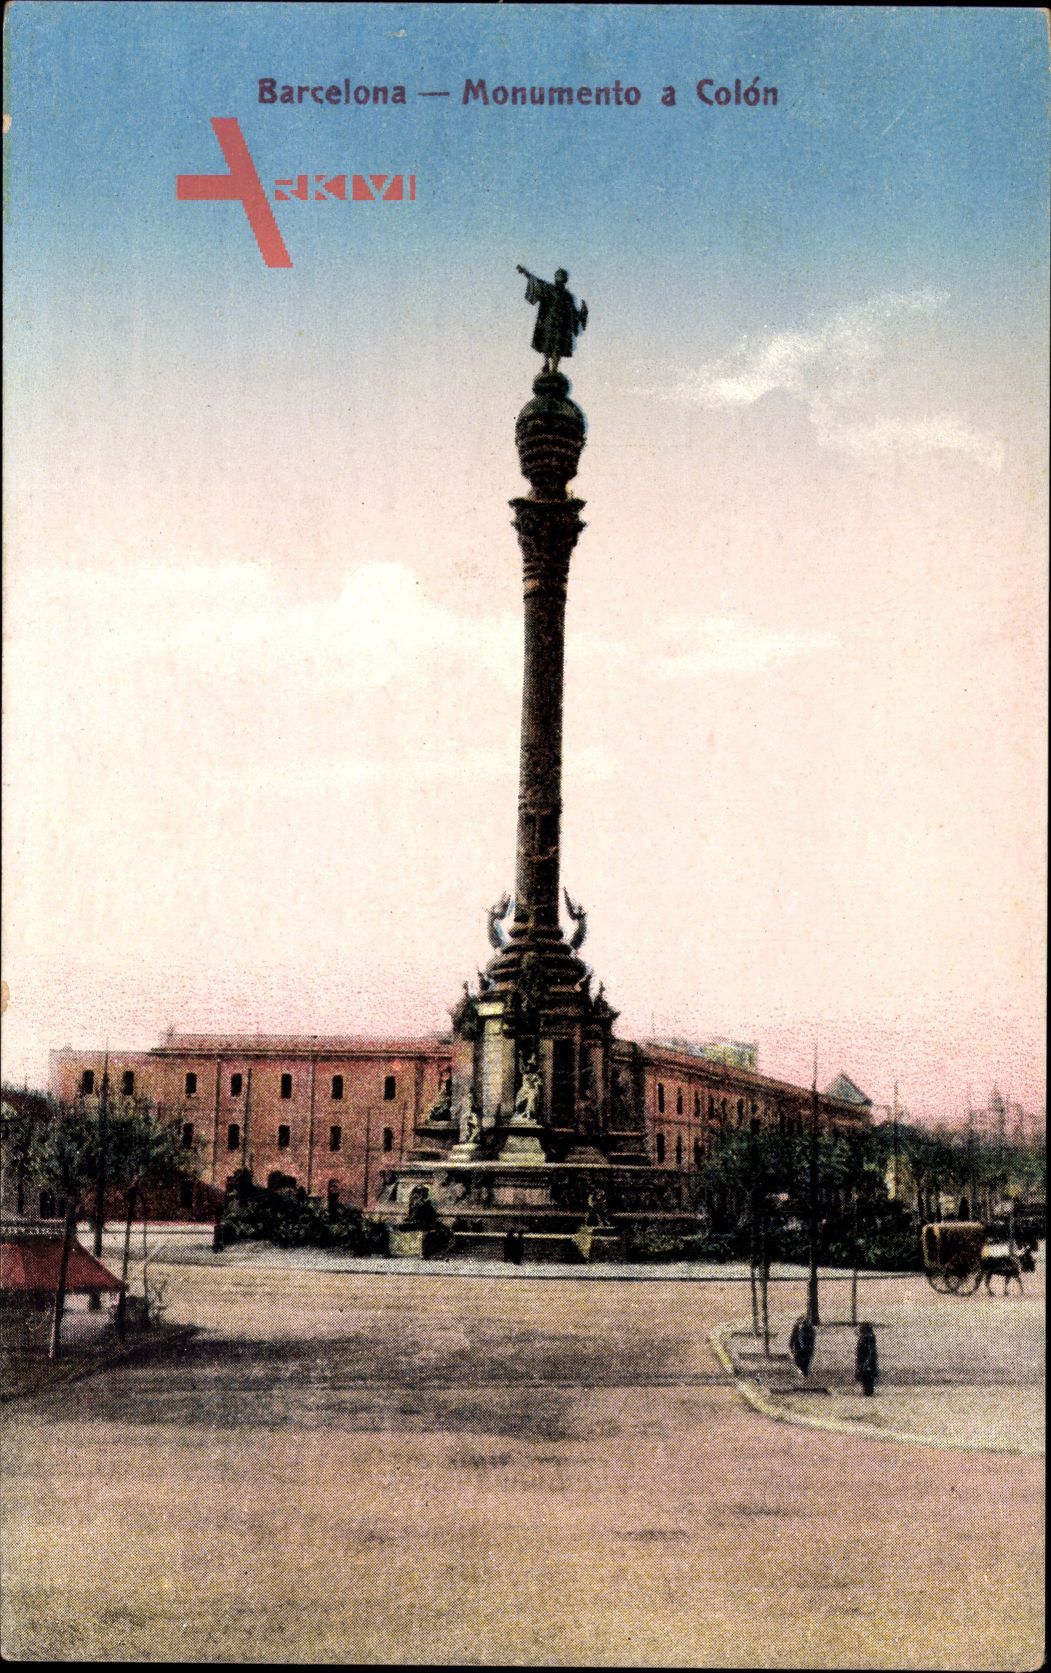 Barcelona Katalonien, Monumento a Colon, Denkmal